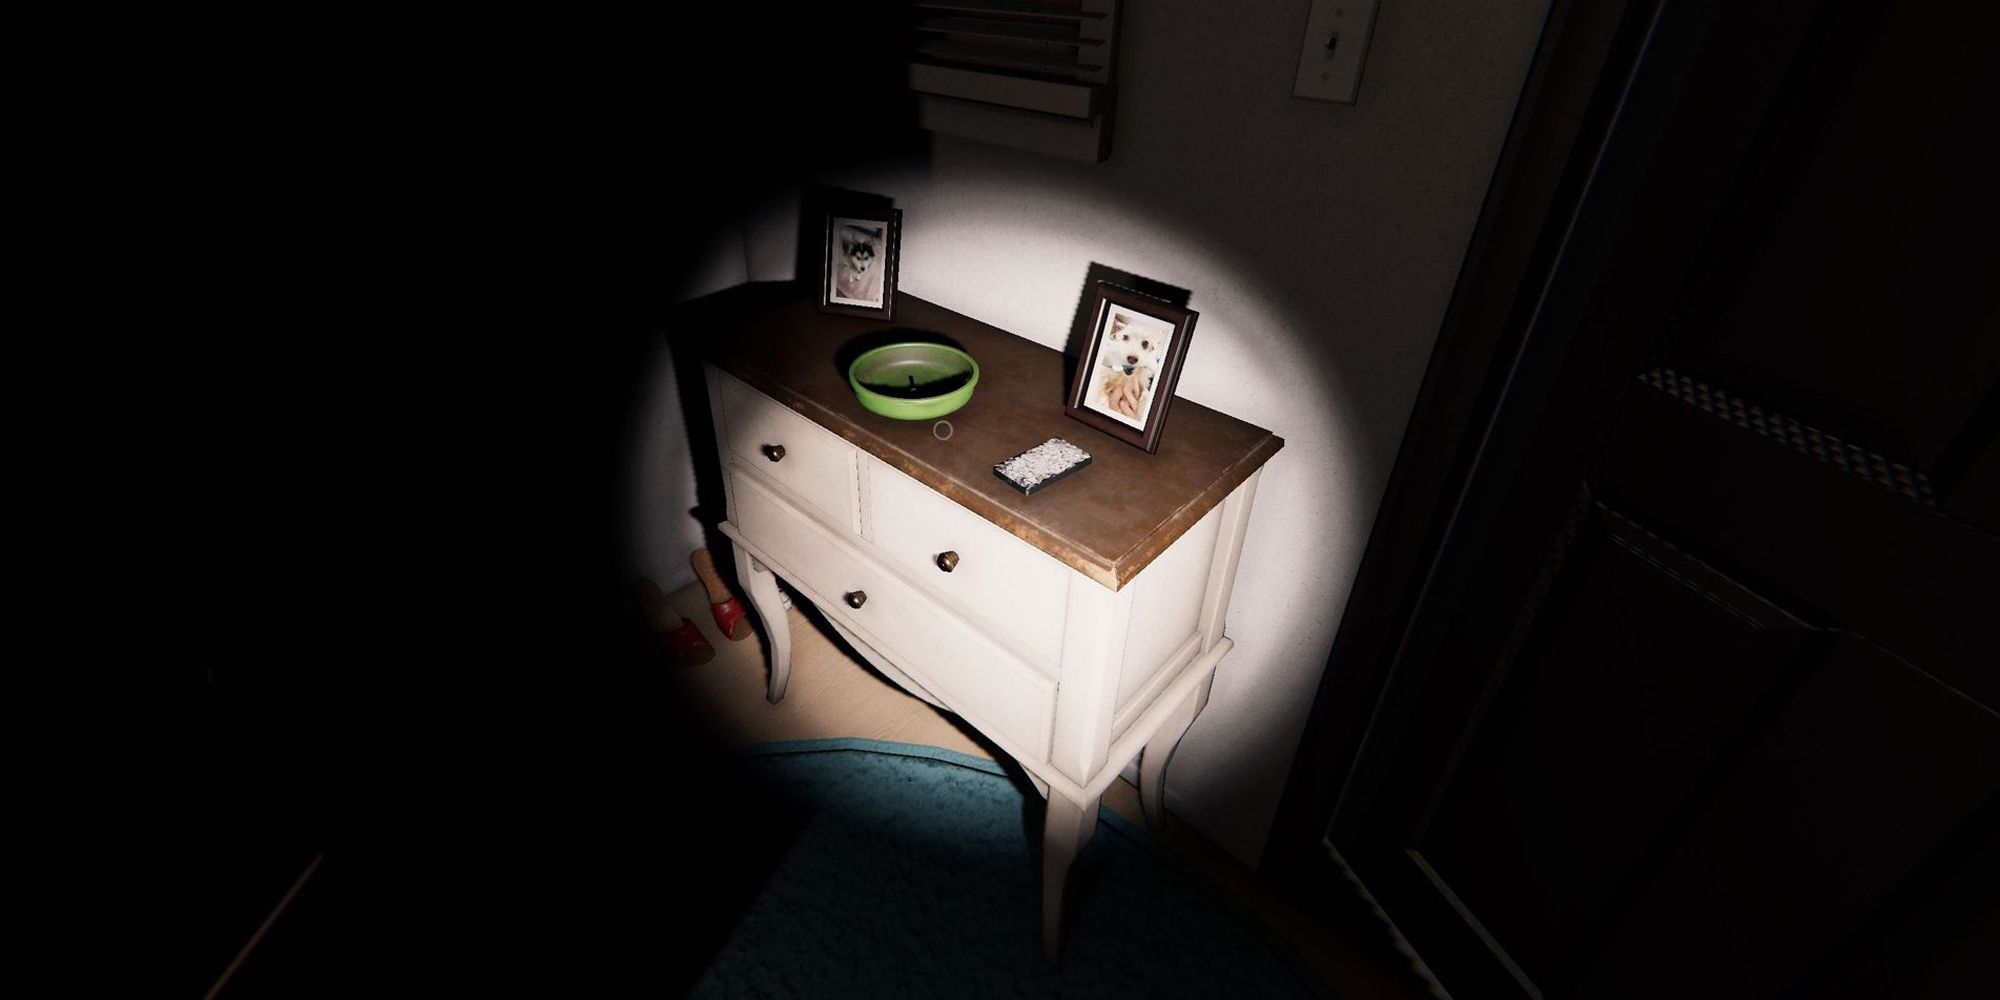 Изображение показывает коробку с картами Таро на деревянном комоде рядом с входной дверью в Edgefield House в игре Phasmophobia. На этом комоде также находятся две фотографии и зеленая миска.